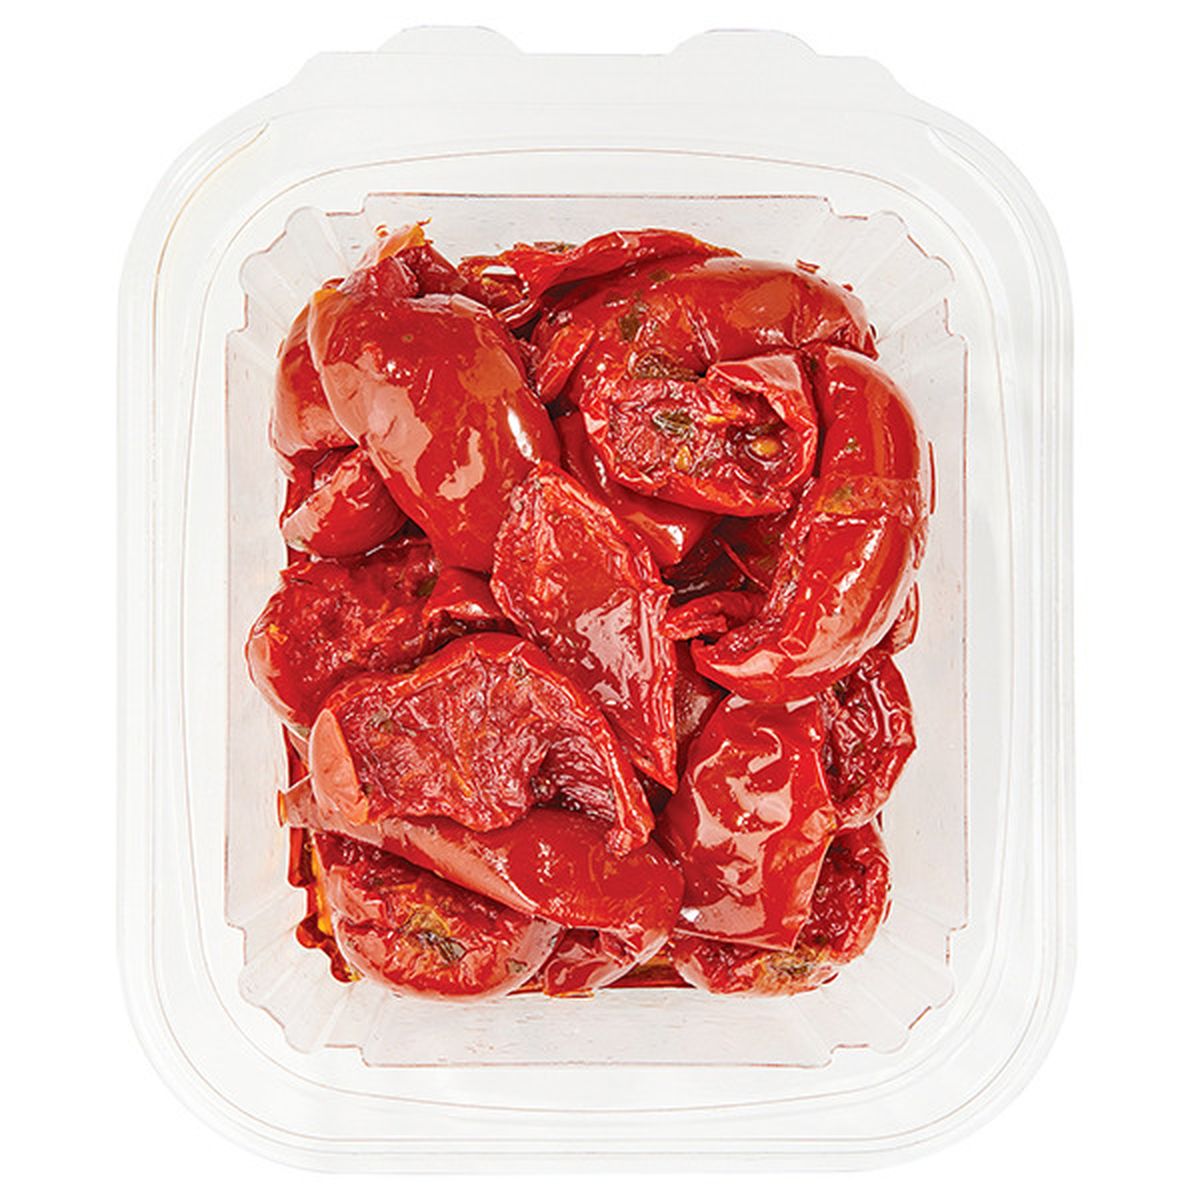 Calories in Wegmans Roasted Italian Roma Tomatoes